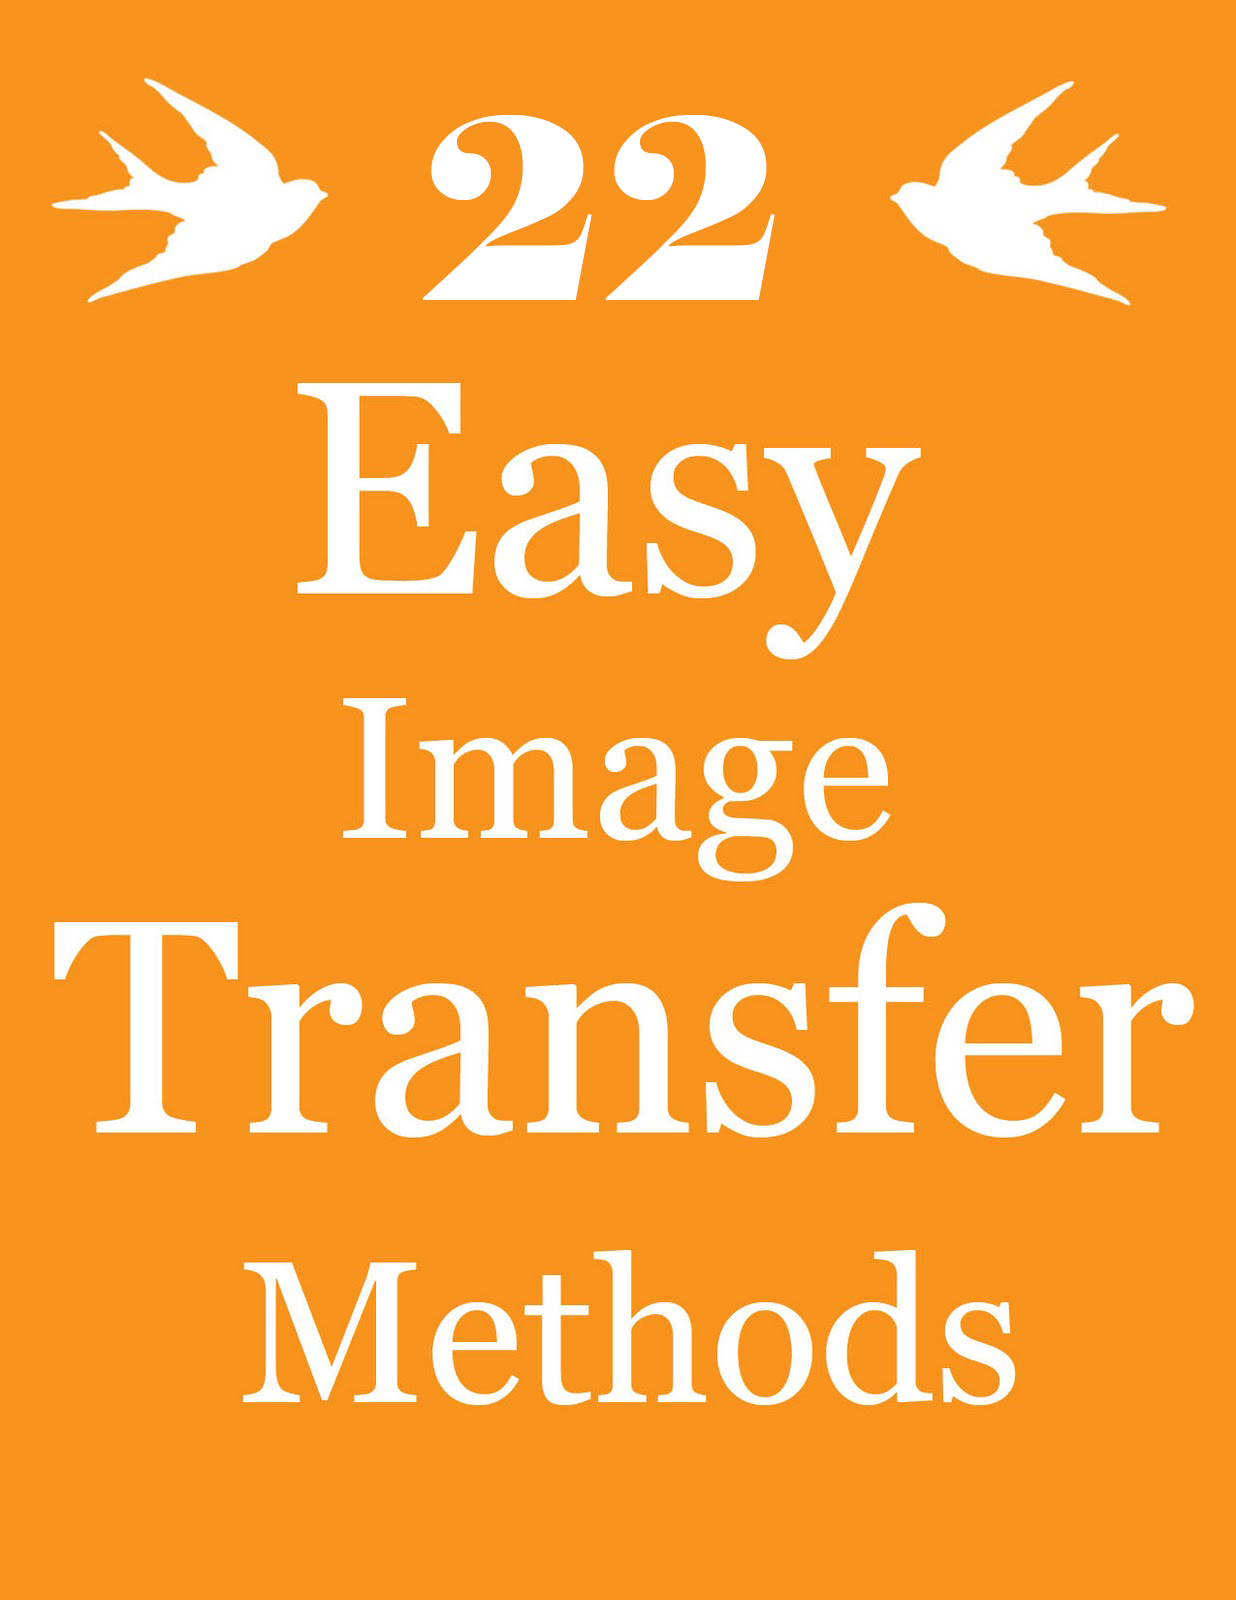 22 Easy Image Transfer Methods